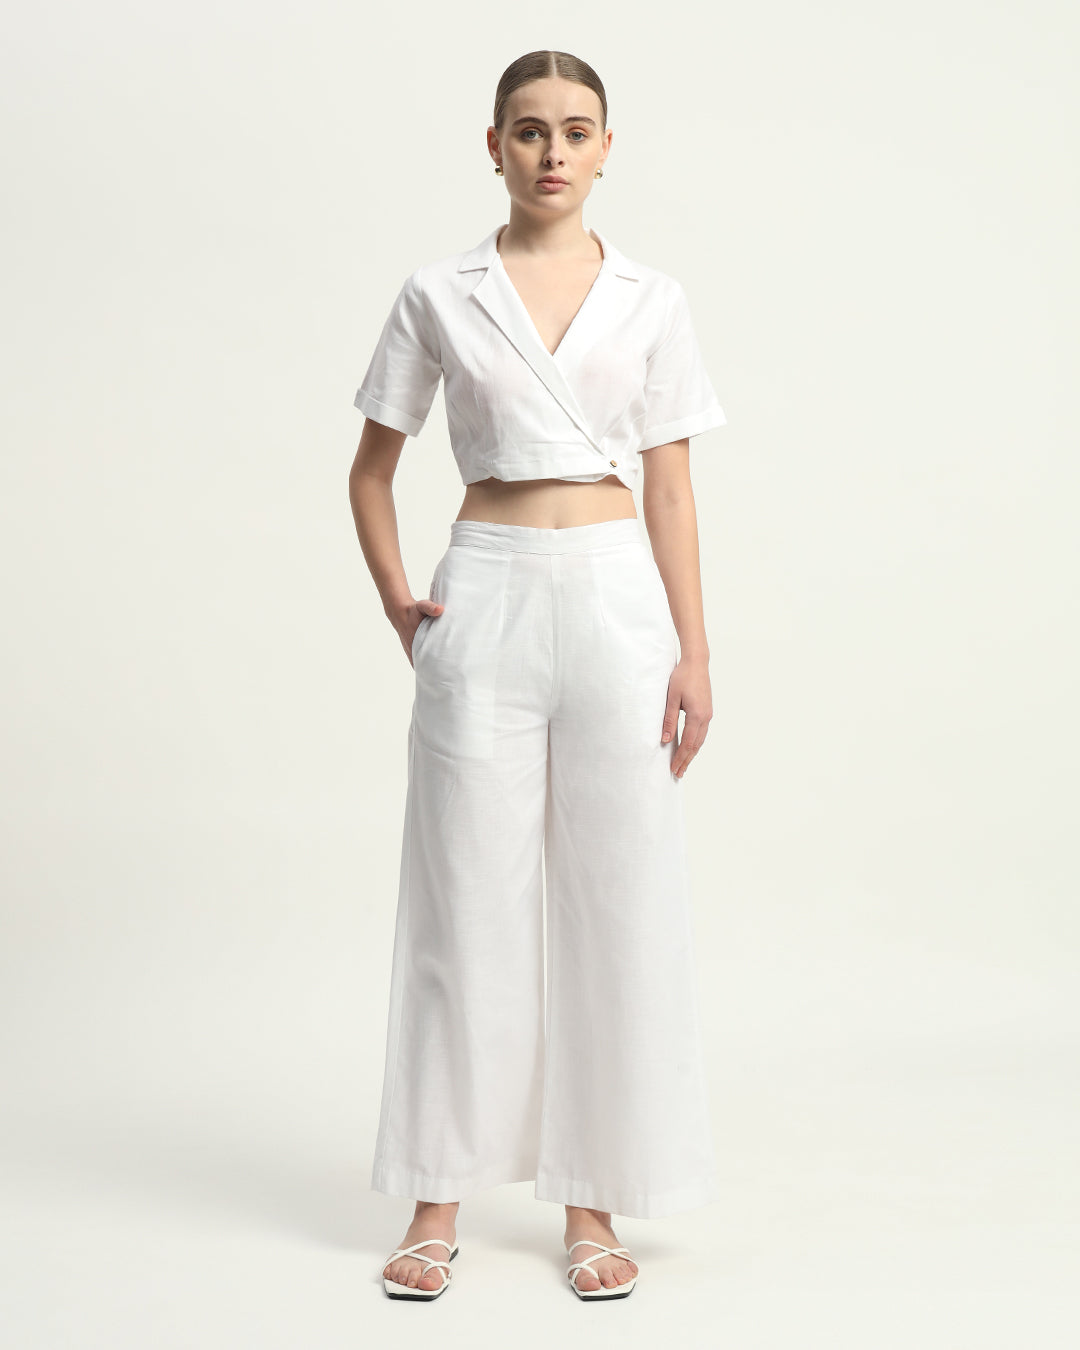 Pants Matching Set- White Lapel Collar